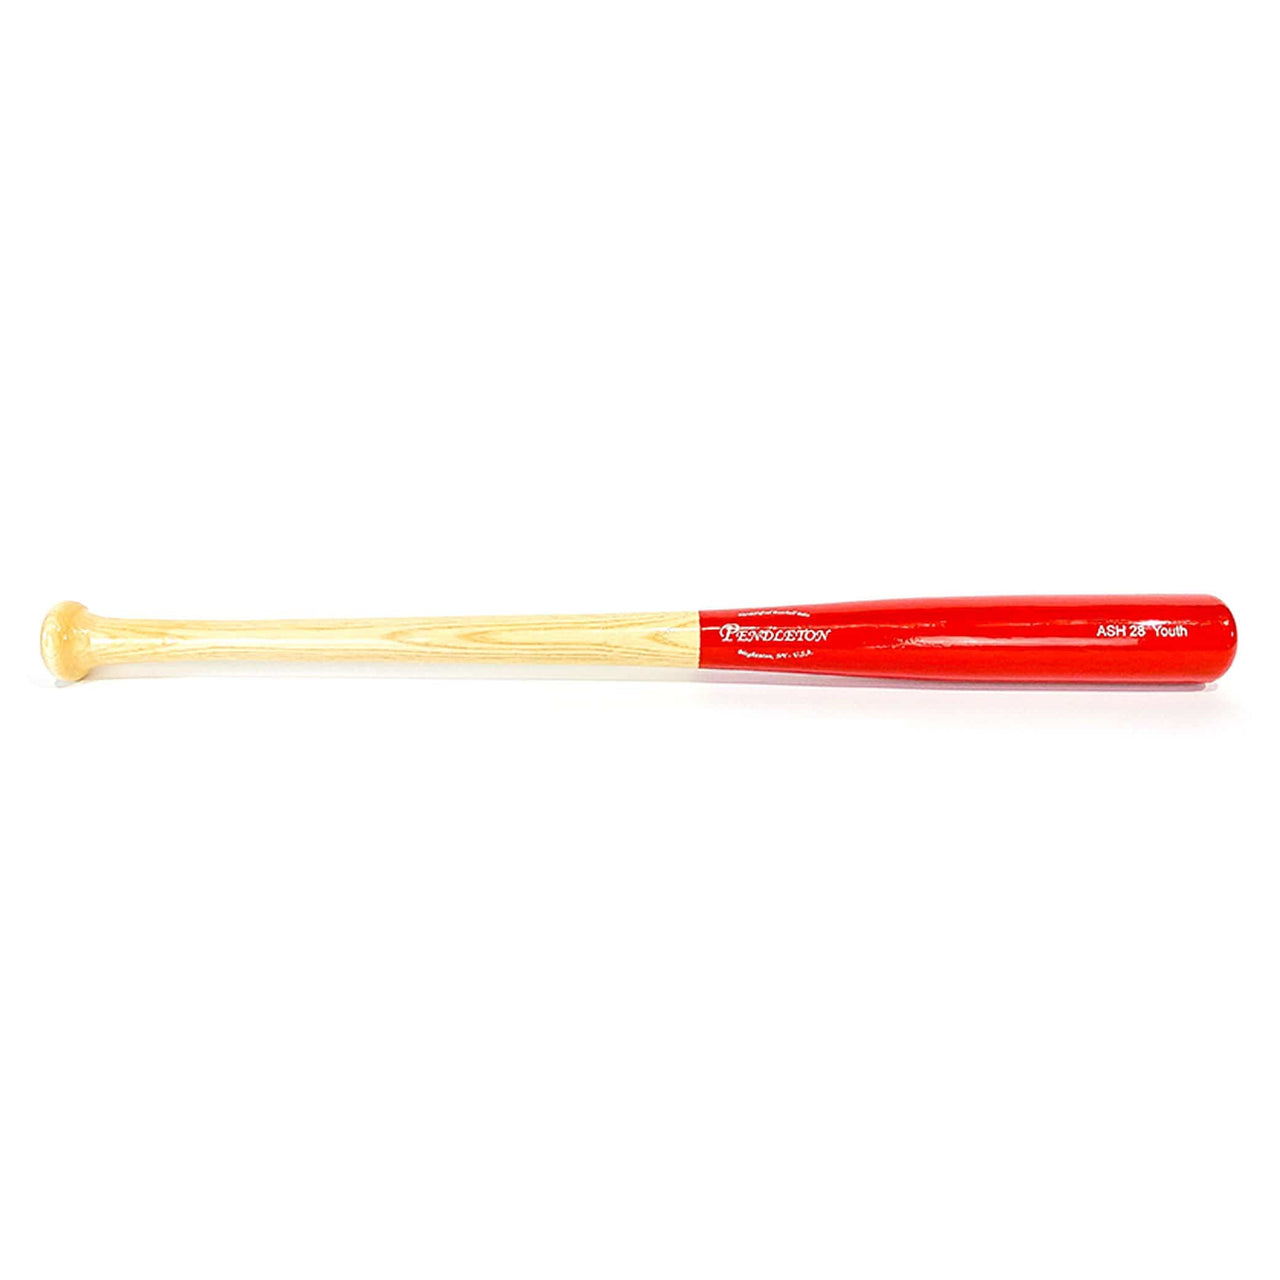 Pendleton Playing Bats Natural | Red | White / 28" / (-6) Pendleton Bat Co. Ash 28 Wood Baseball Bat | Ash